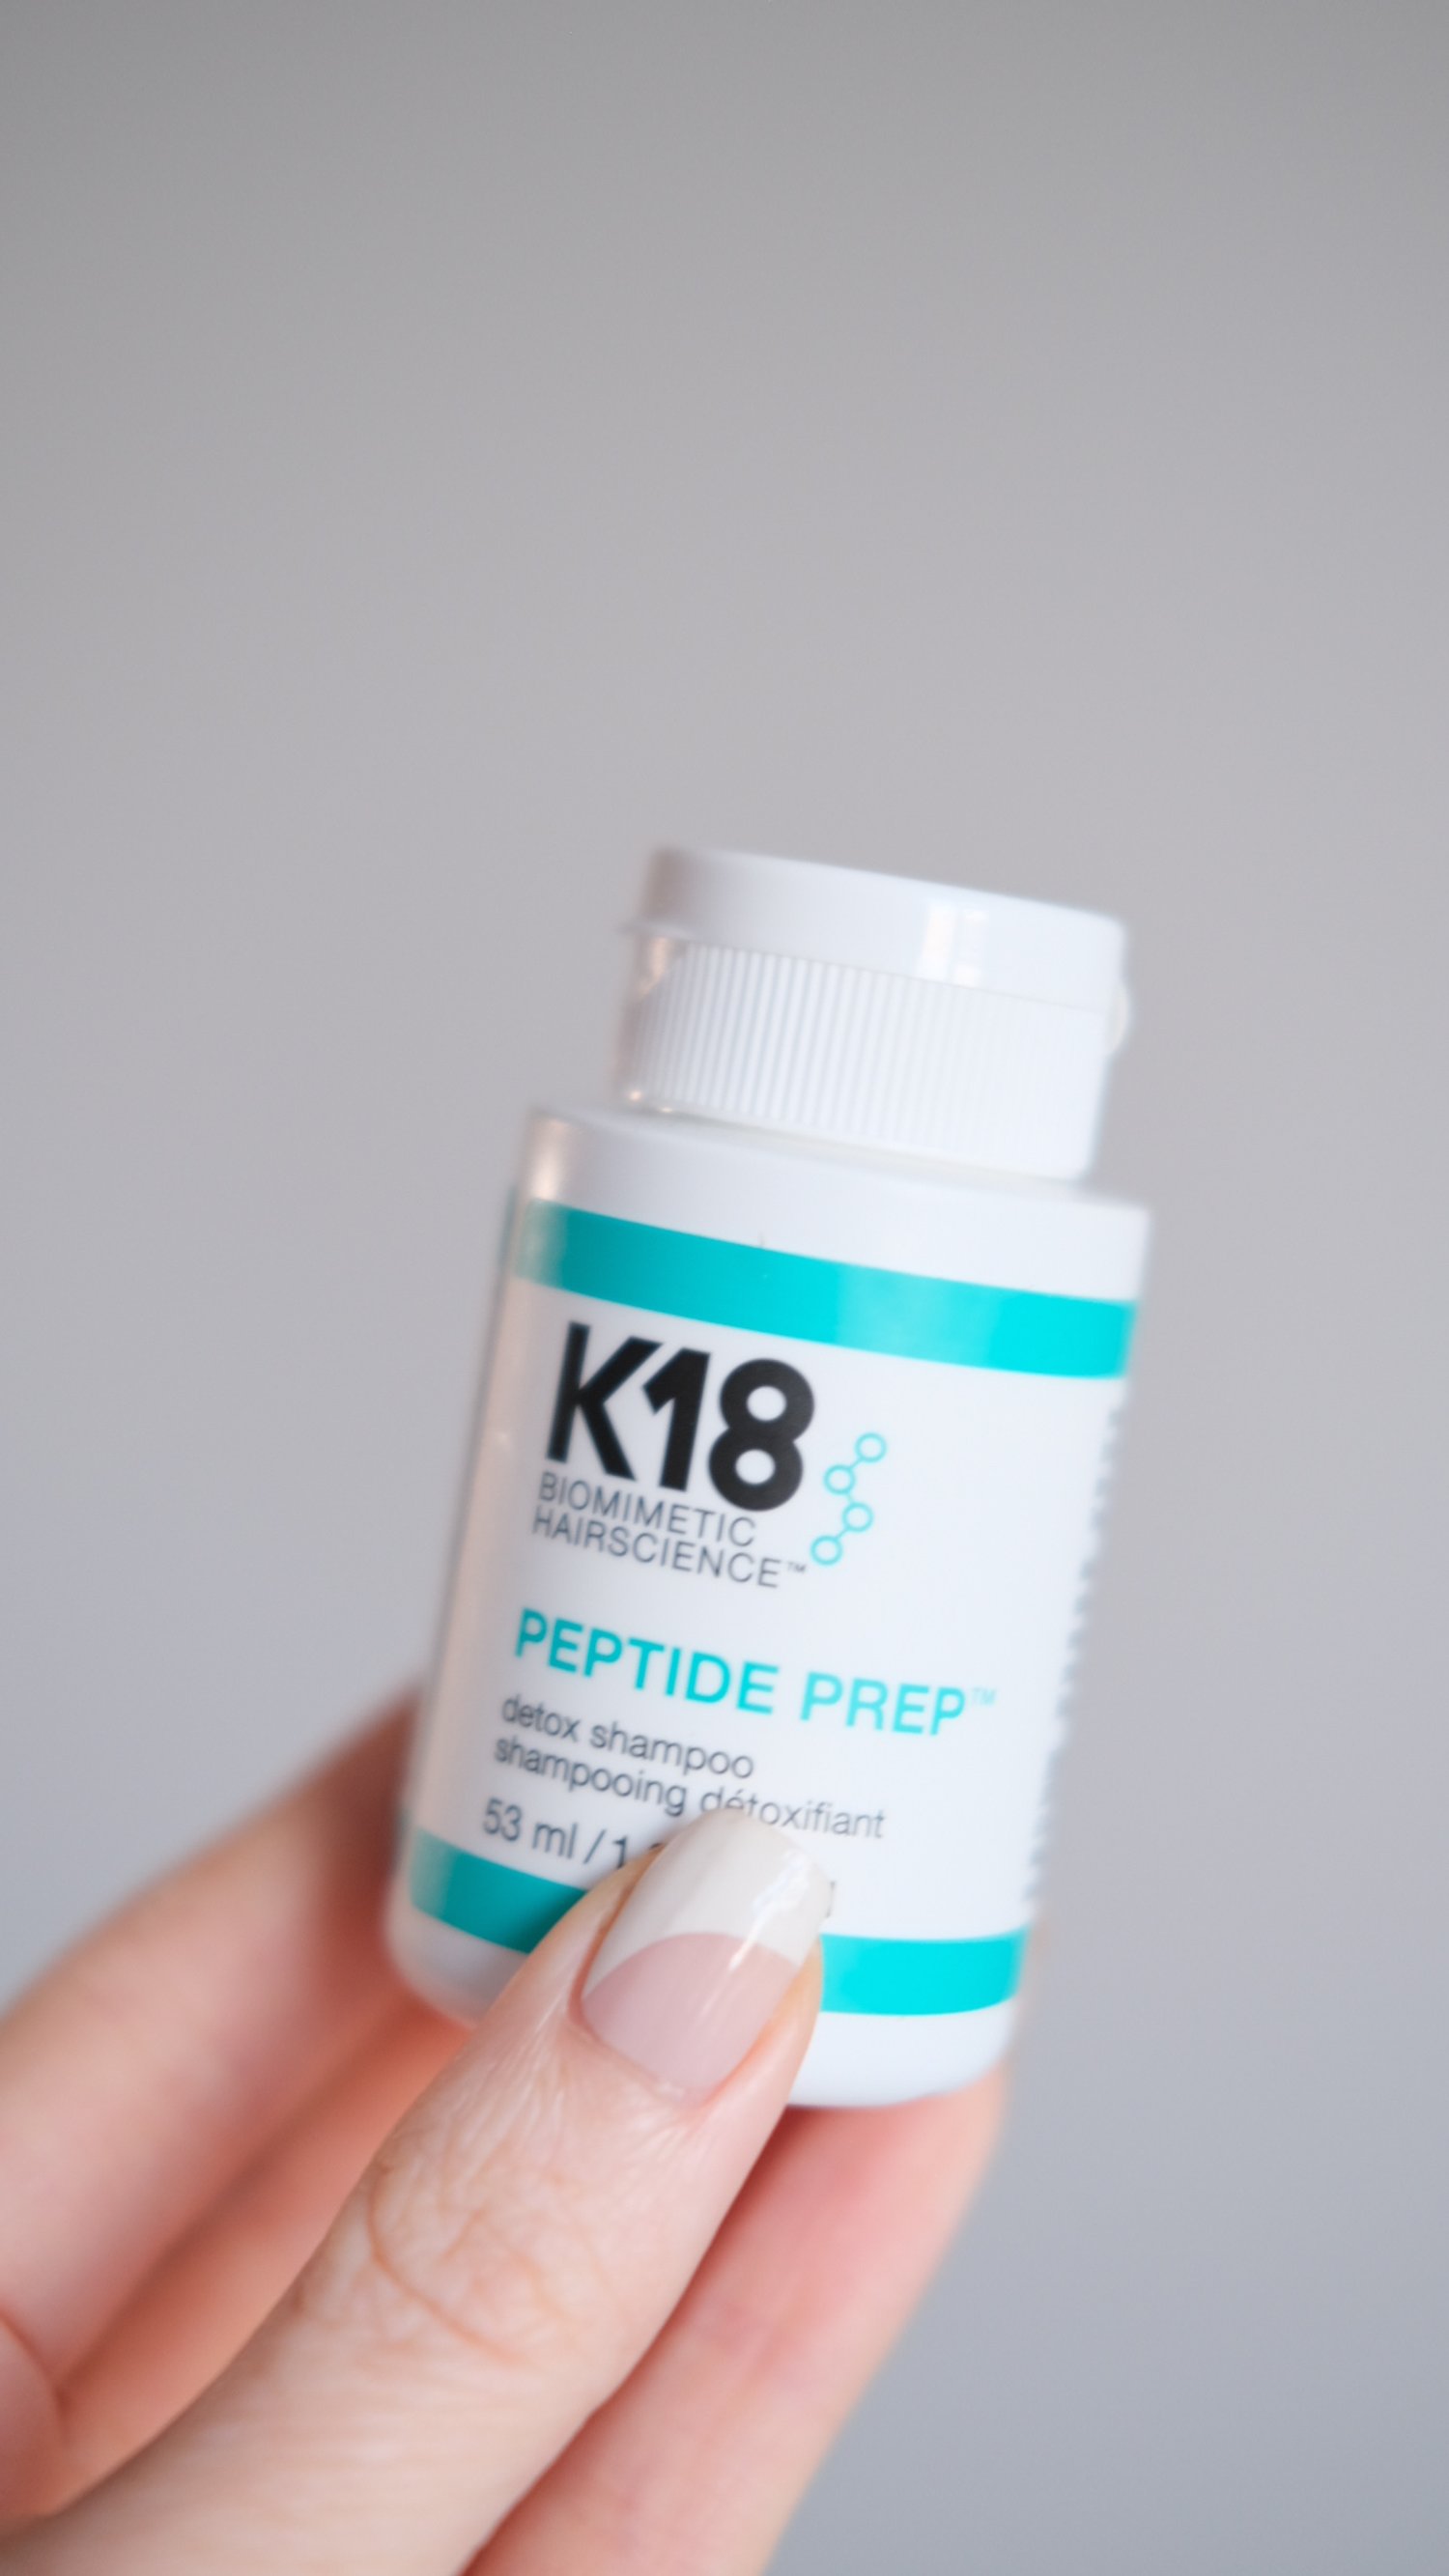 k18 shampoo review. K18 peptide shampoo review. K18 reviews.